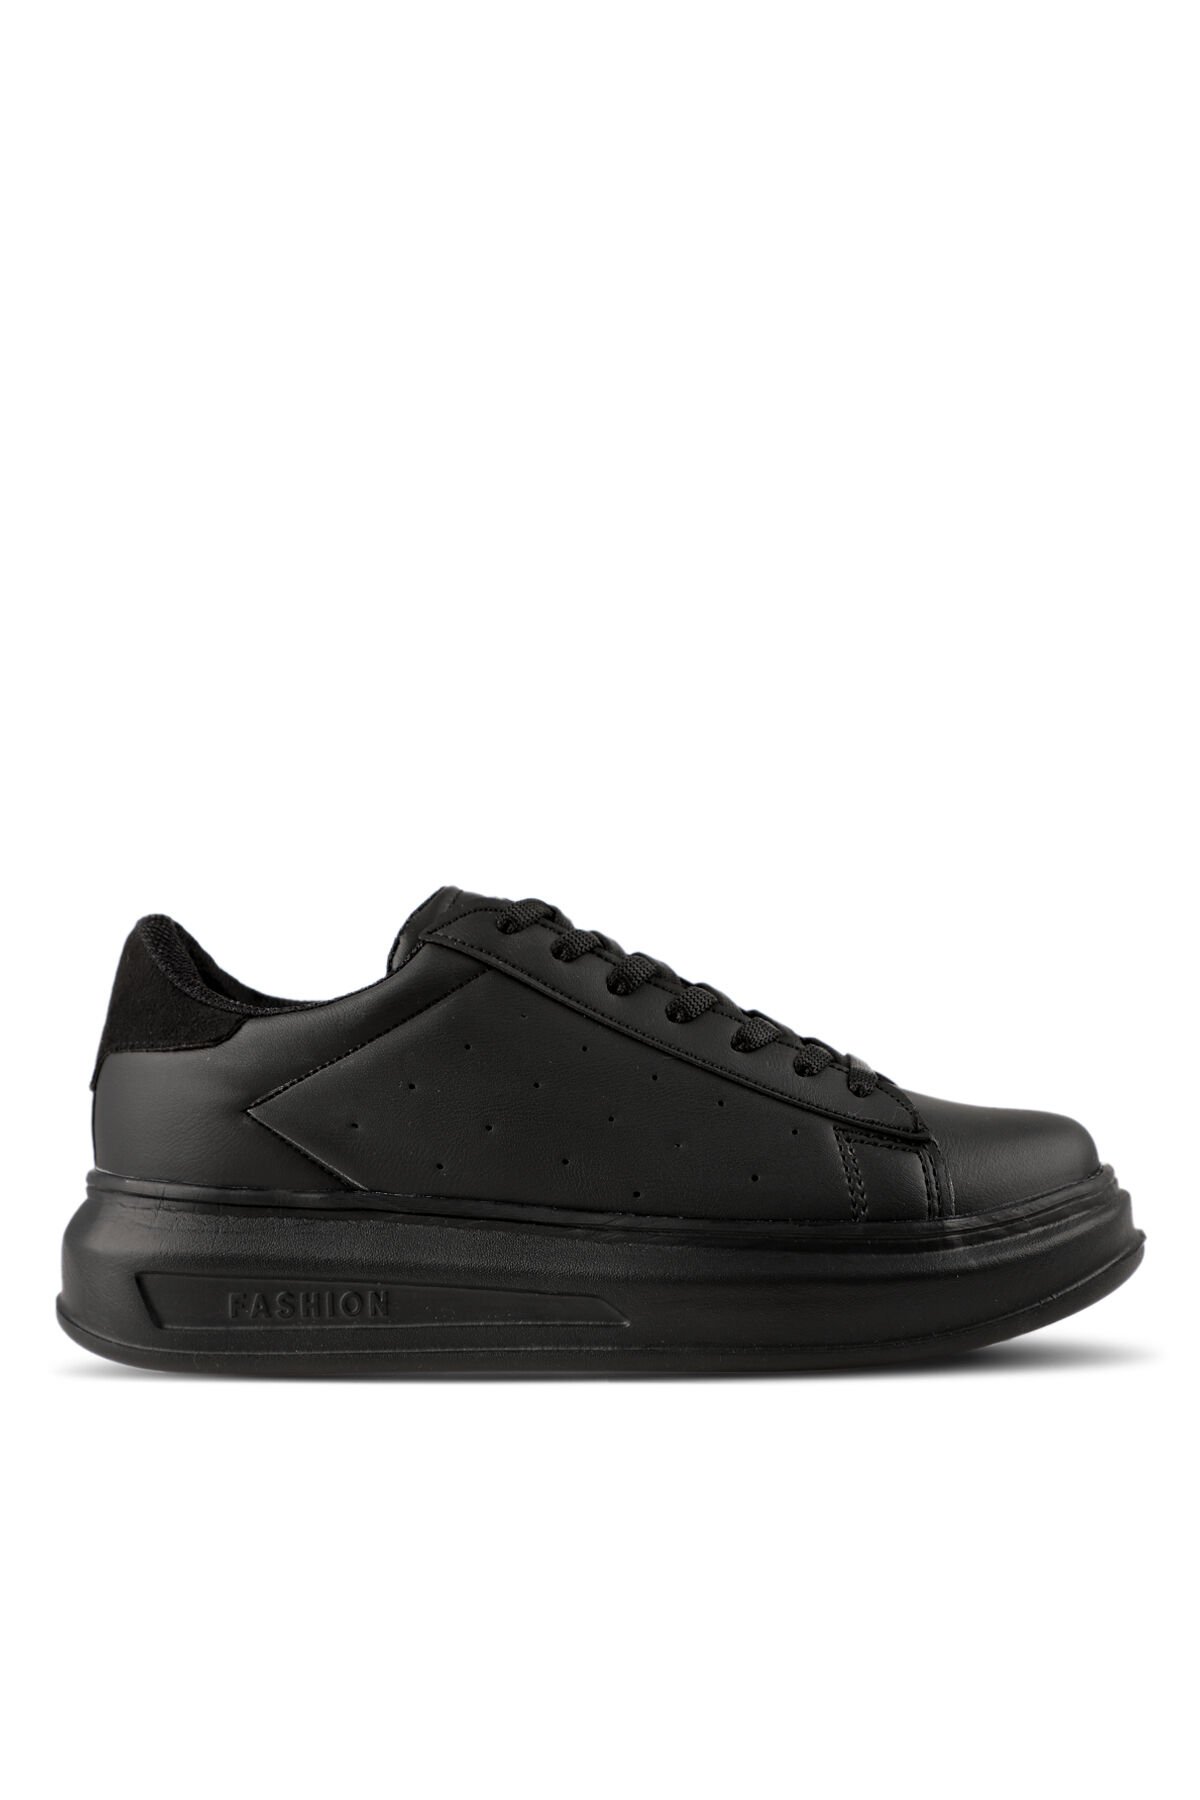 Slazenger ZARATHUSTRA Sneaker Kadın Ayakkabı Siyah / Siyah - Thumbnail